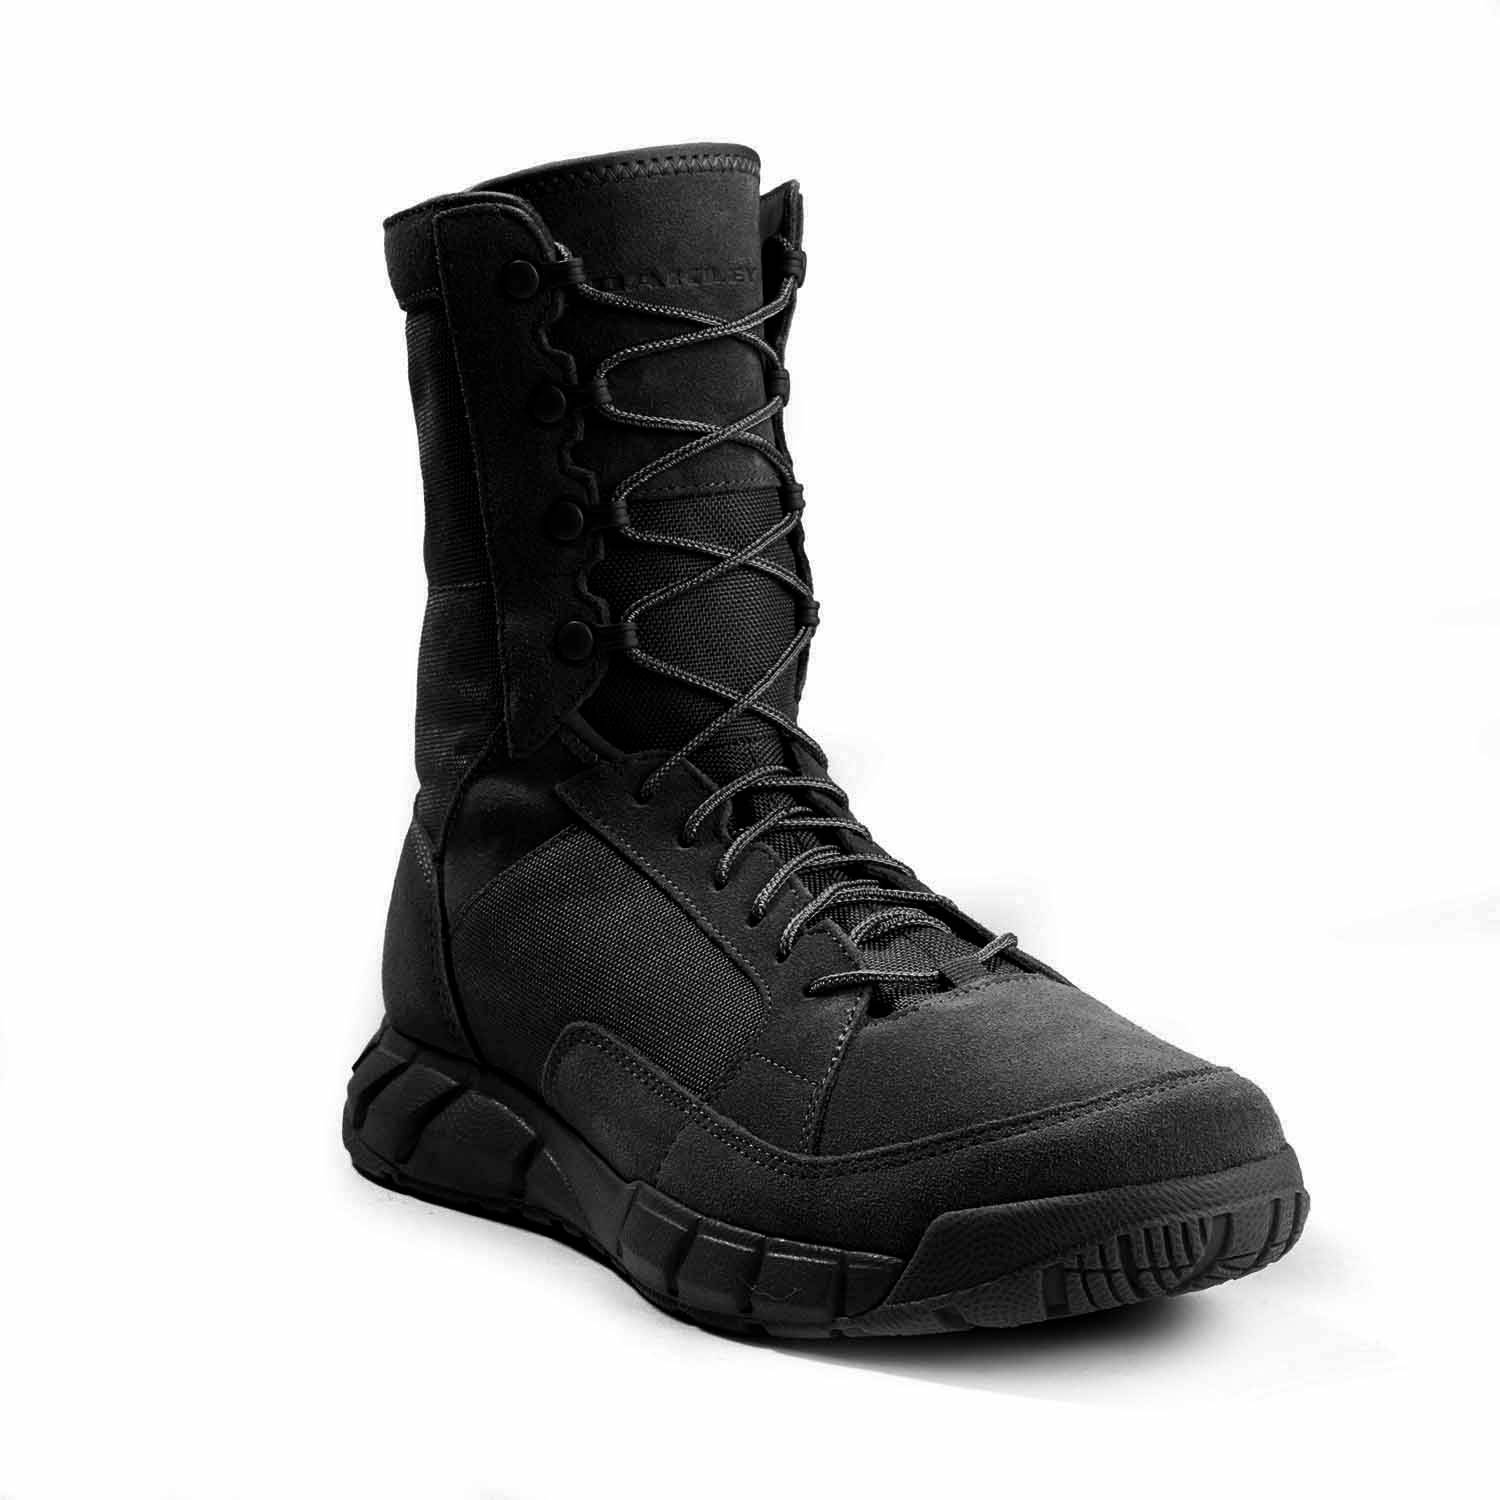 oakley tactical boots